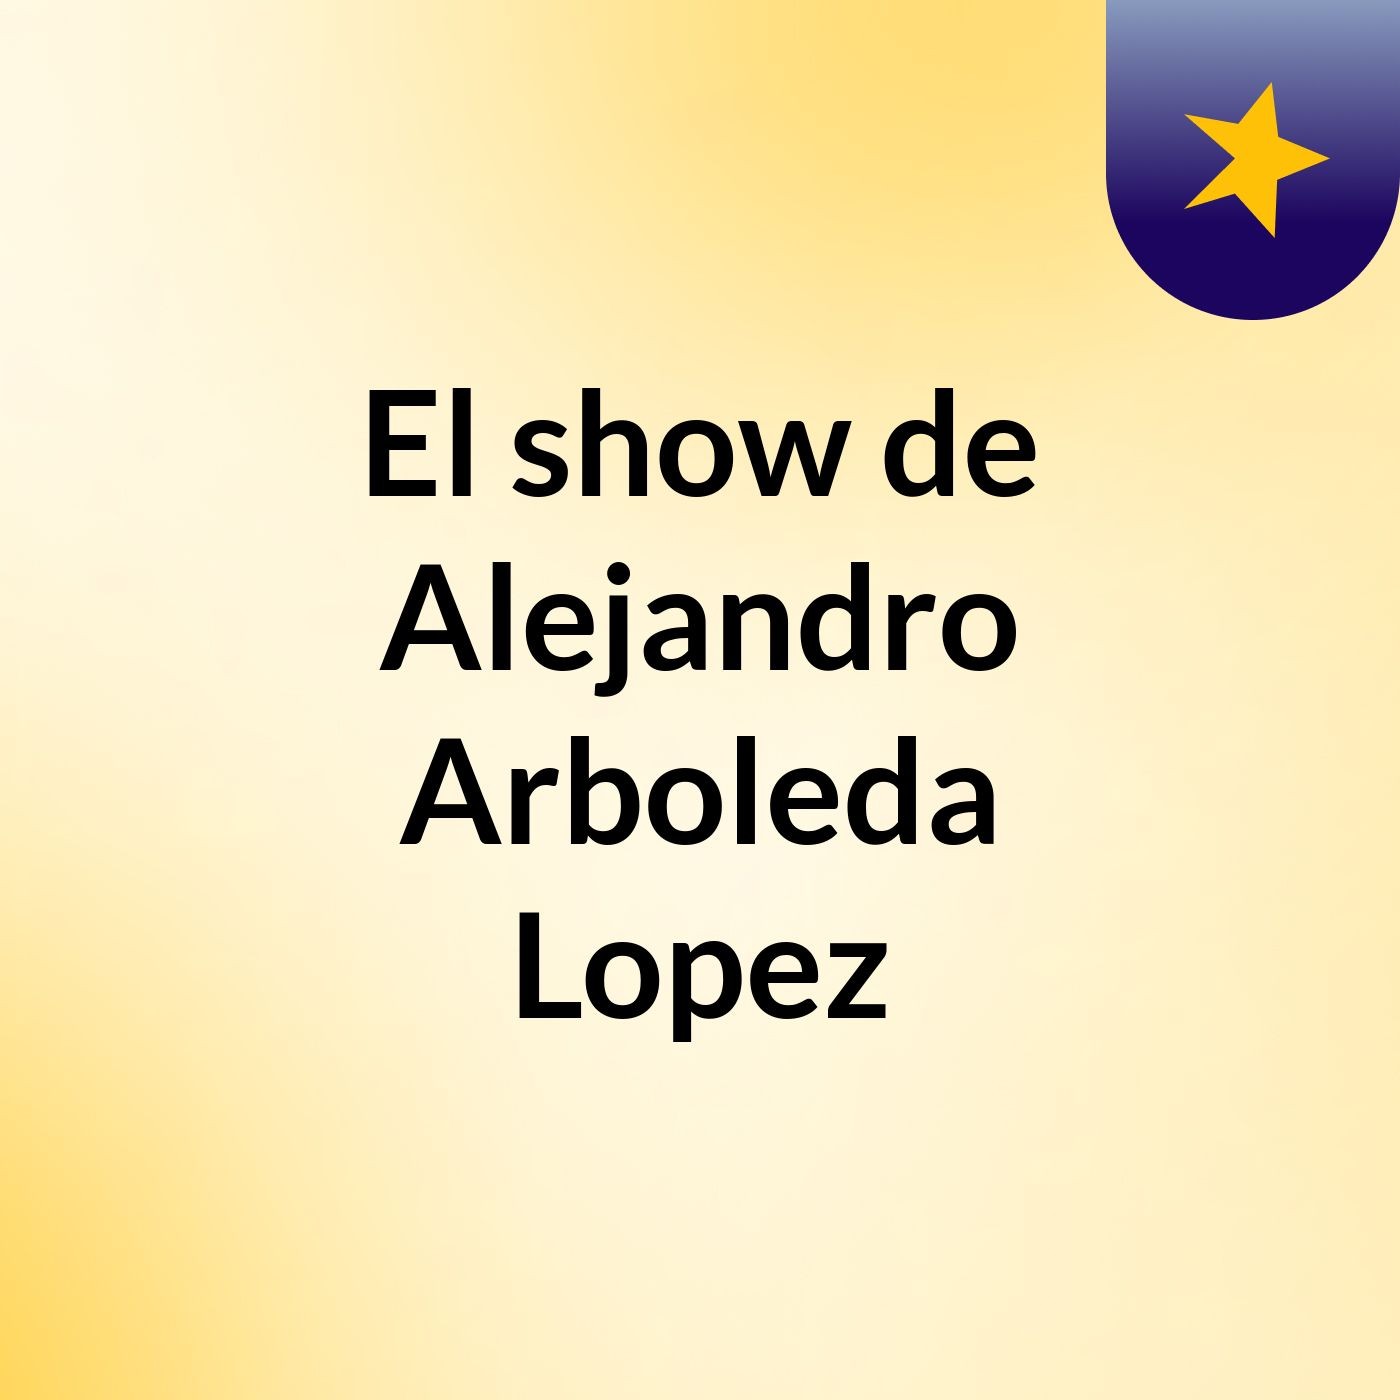 El show de Alejandro Arboleda Lopez